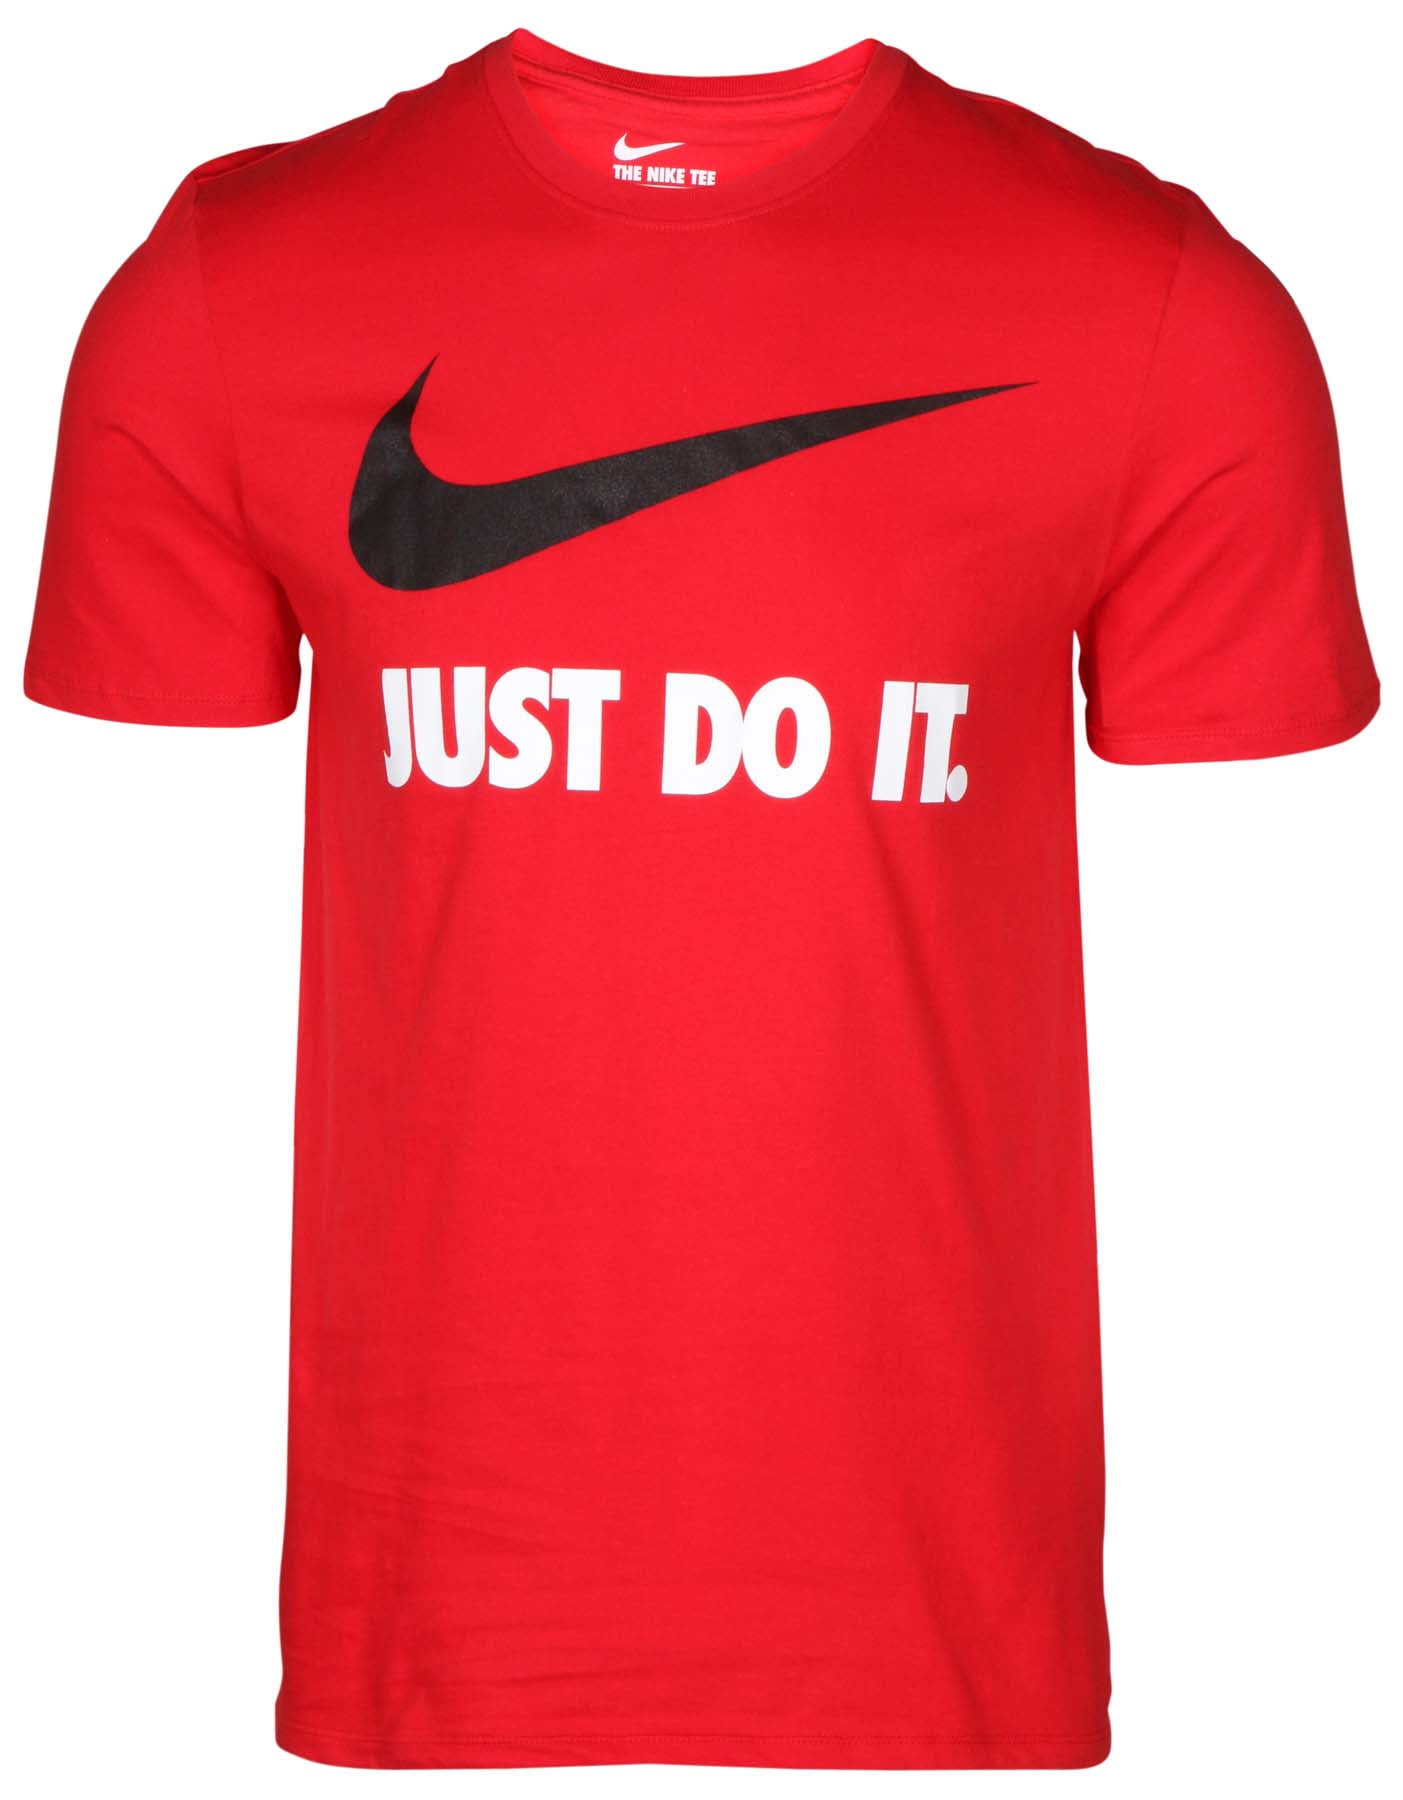 Paleis krokodil Staan voor Nike Men's Just Do It Swoosh T-shirt - Walmart.com